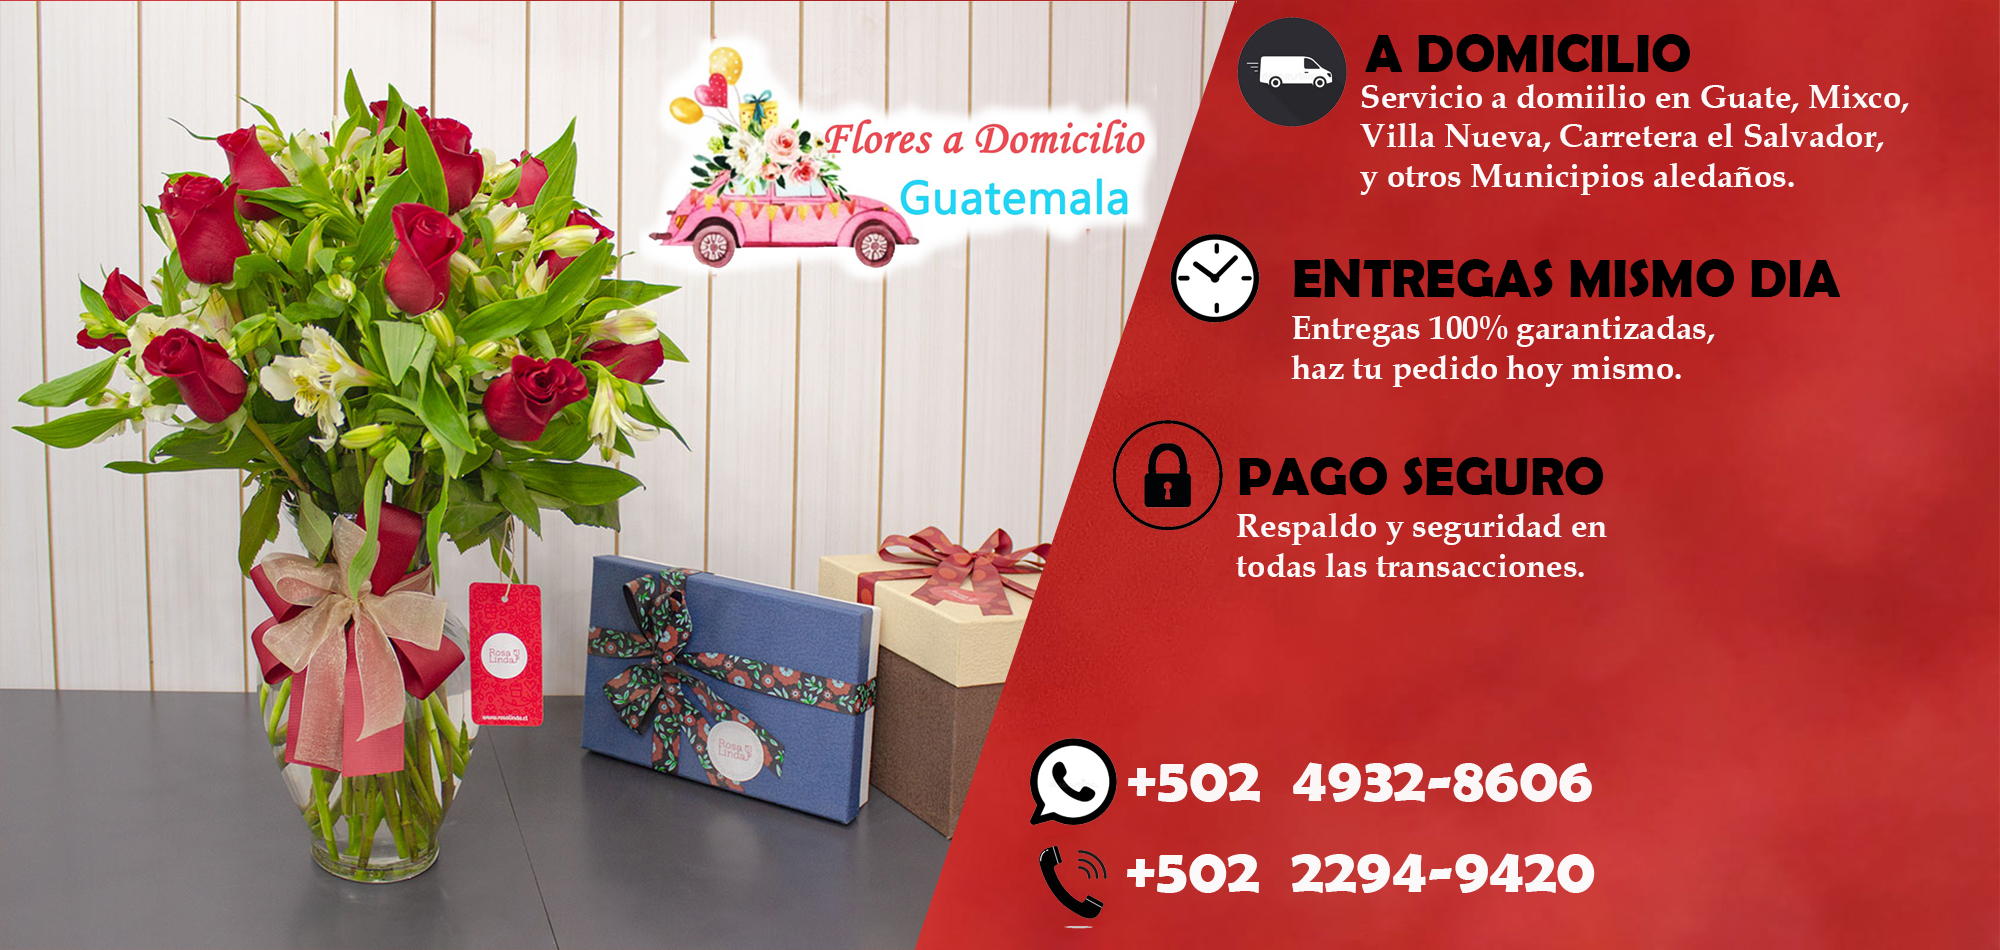 Flores a domicilio Guatemala a gratis en la mayoría de las zonas de la ciudad capital y Mixco